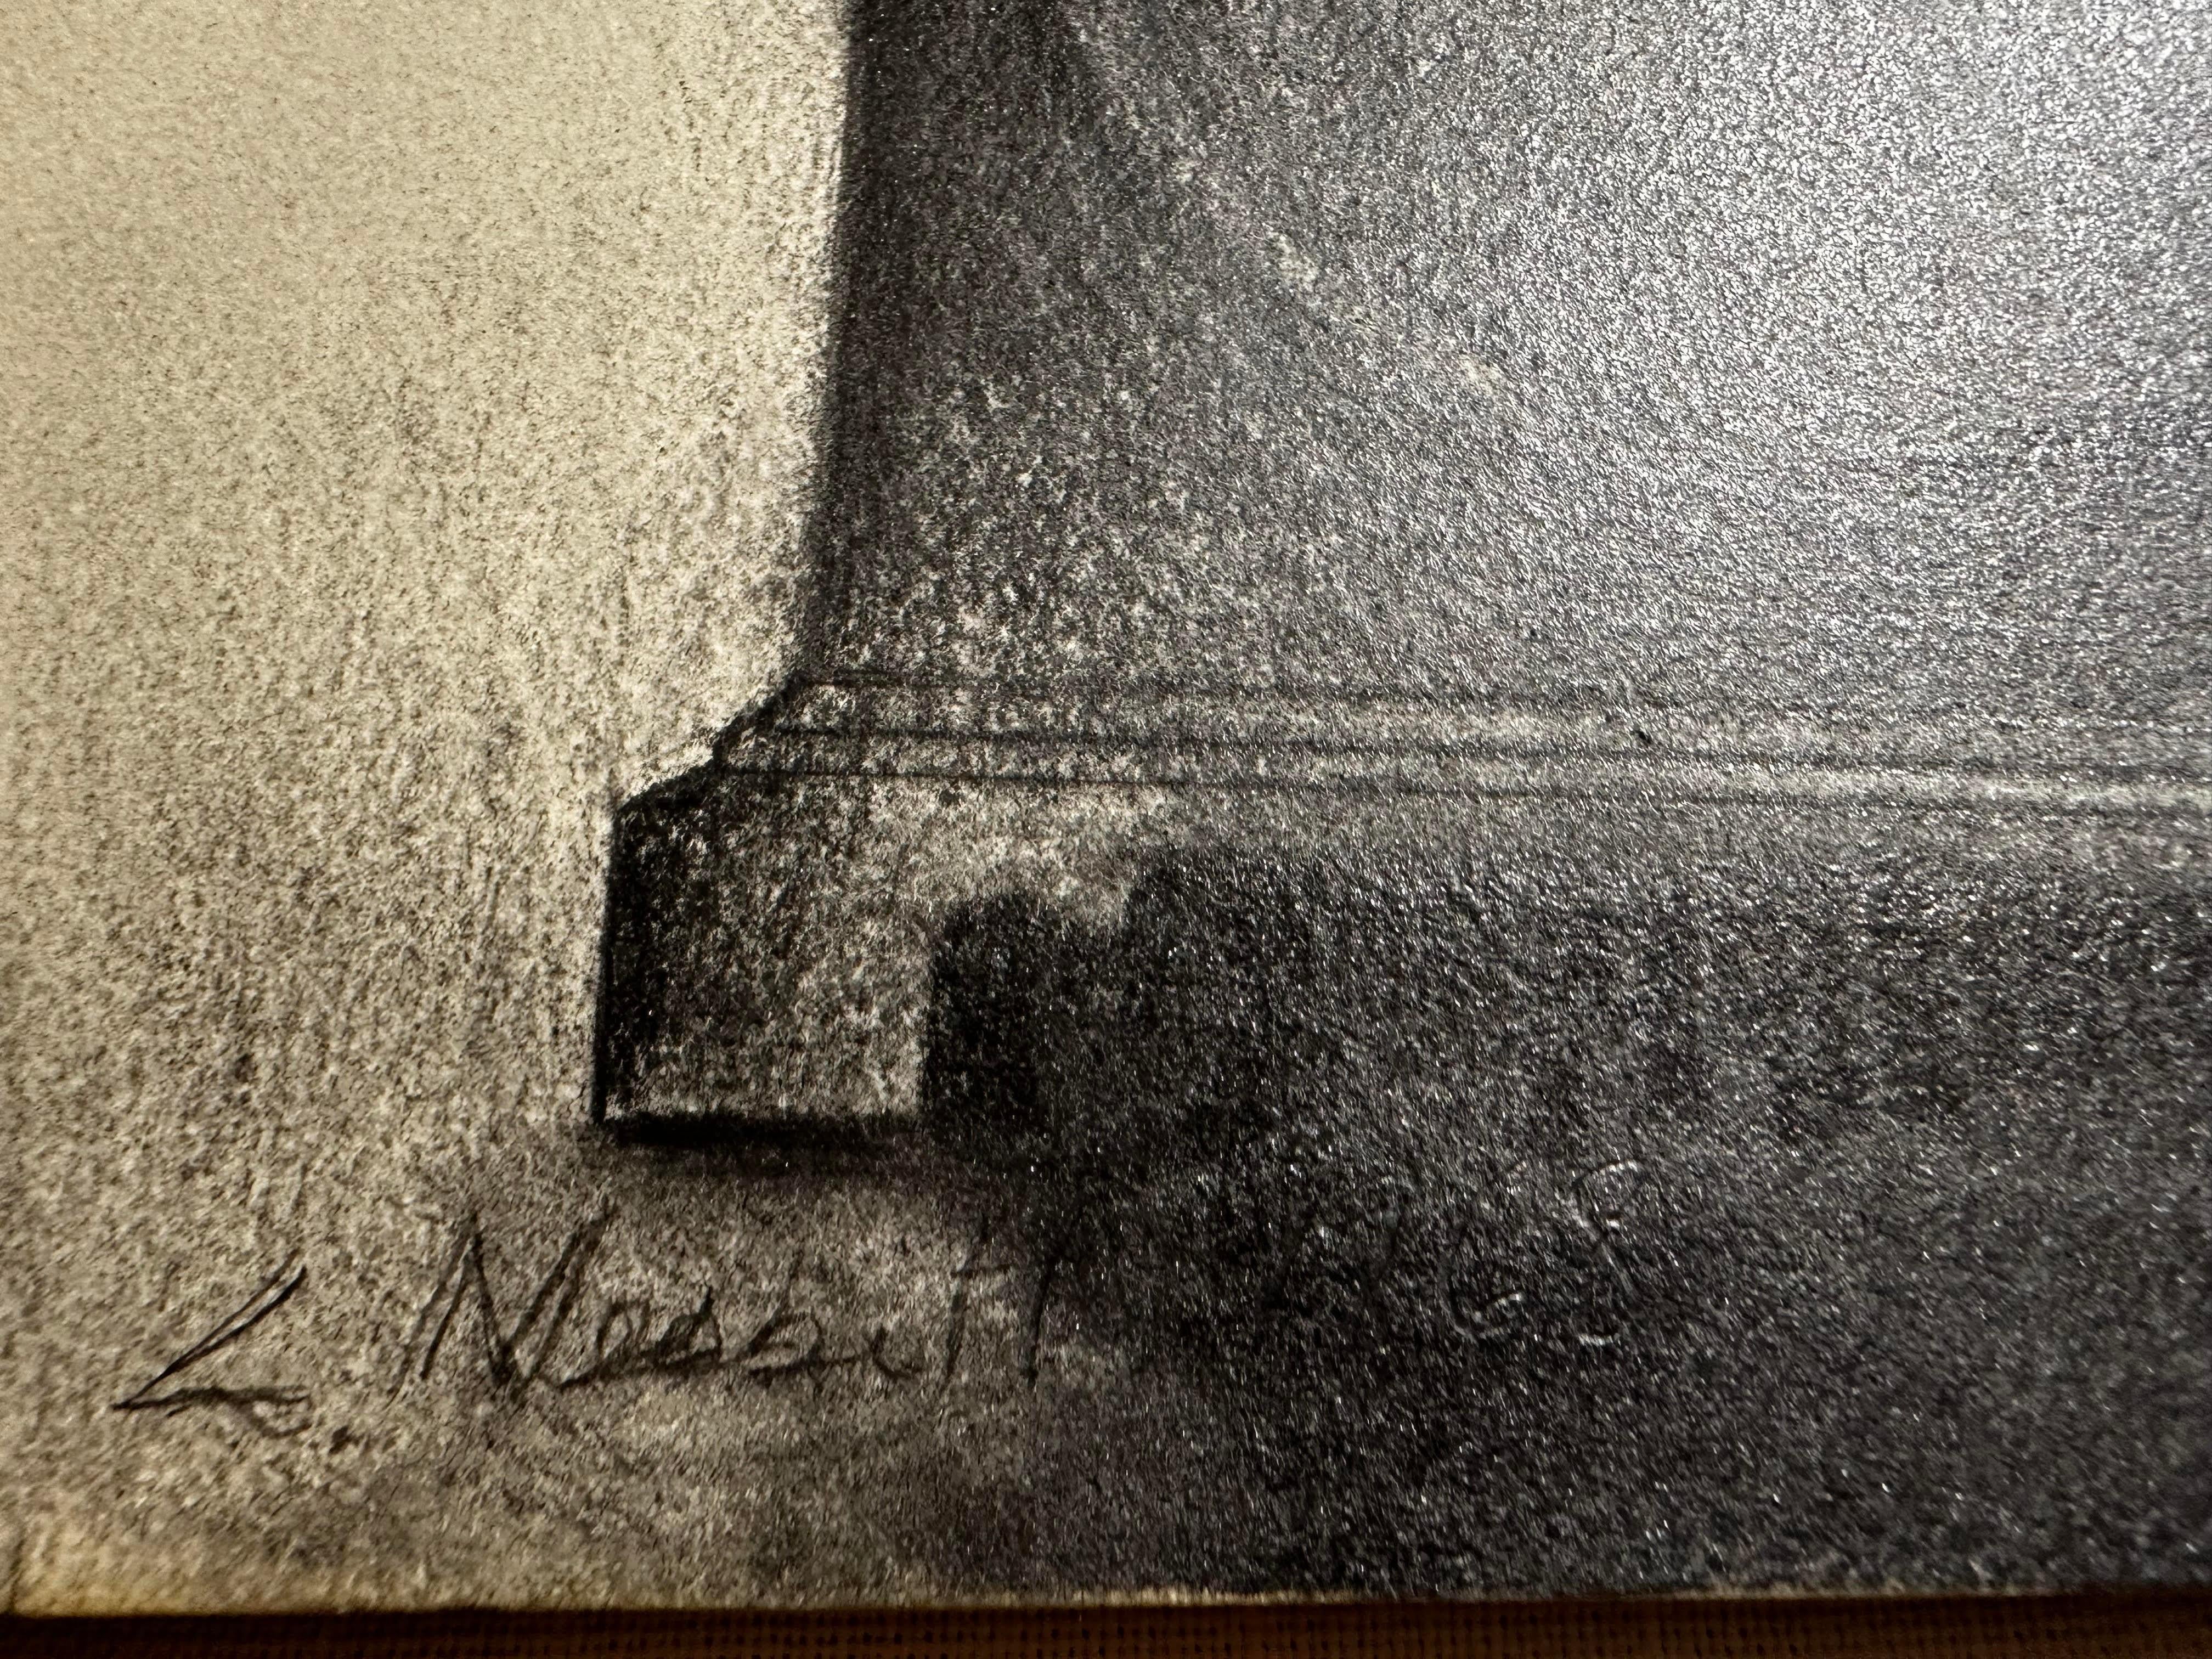 Lowell Nesbitt
Studio-Wanduhr, 1968
Kohle auf Karton mit originalen Ausstellungsetiketten der Corcoran Gallery
Auf der Vorderseite in Graphit signiert
27 x 38,75 Zoll
Ungerahmt; mit den Original-Labels, die bei einer Neueinrahmung auf einen Rahmen